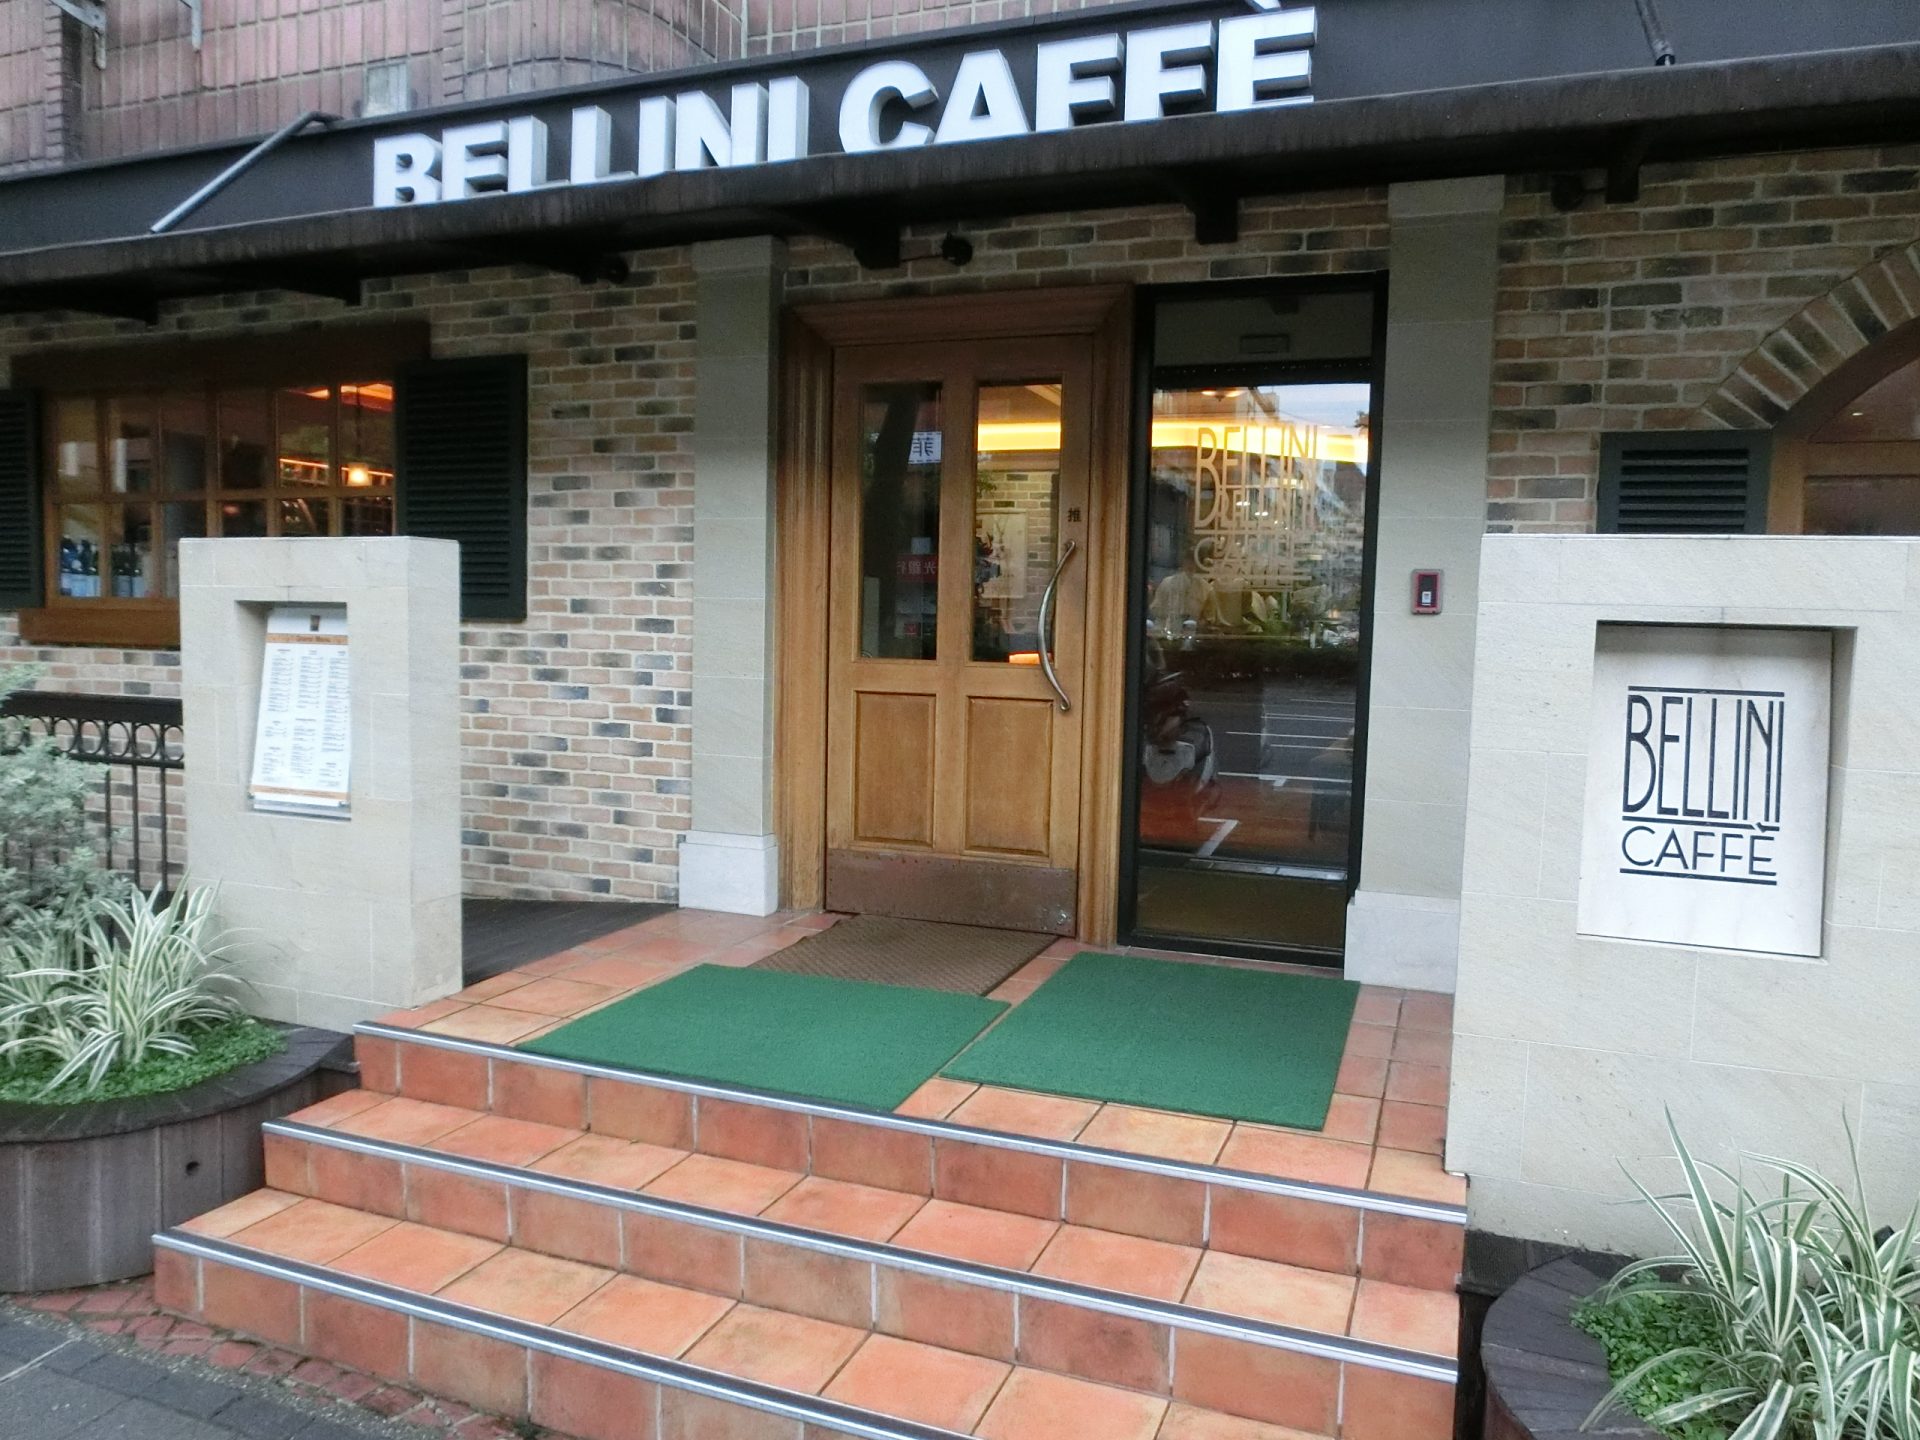 BELLINI CAFFE